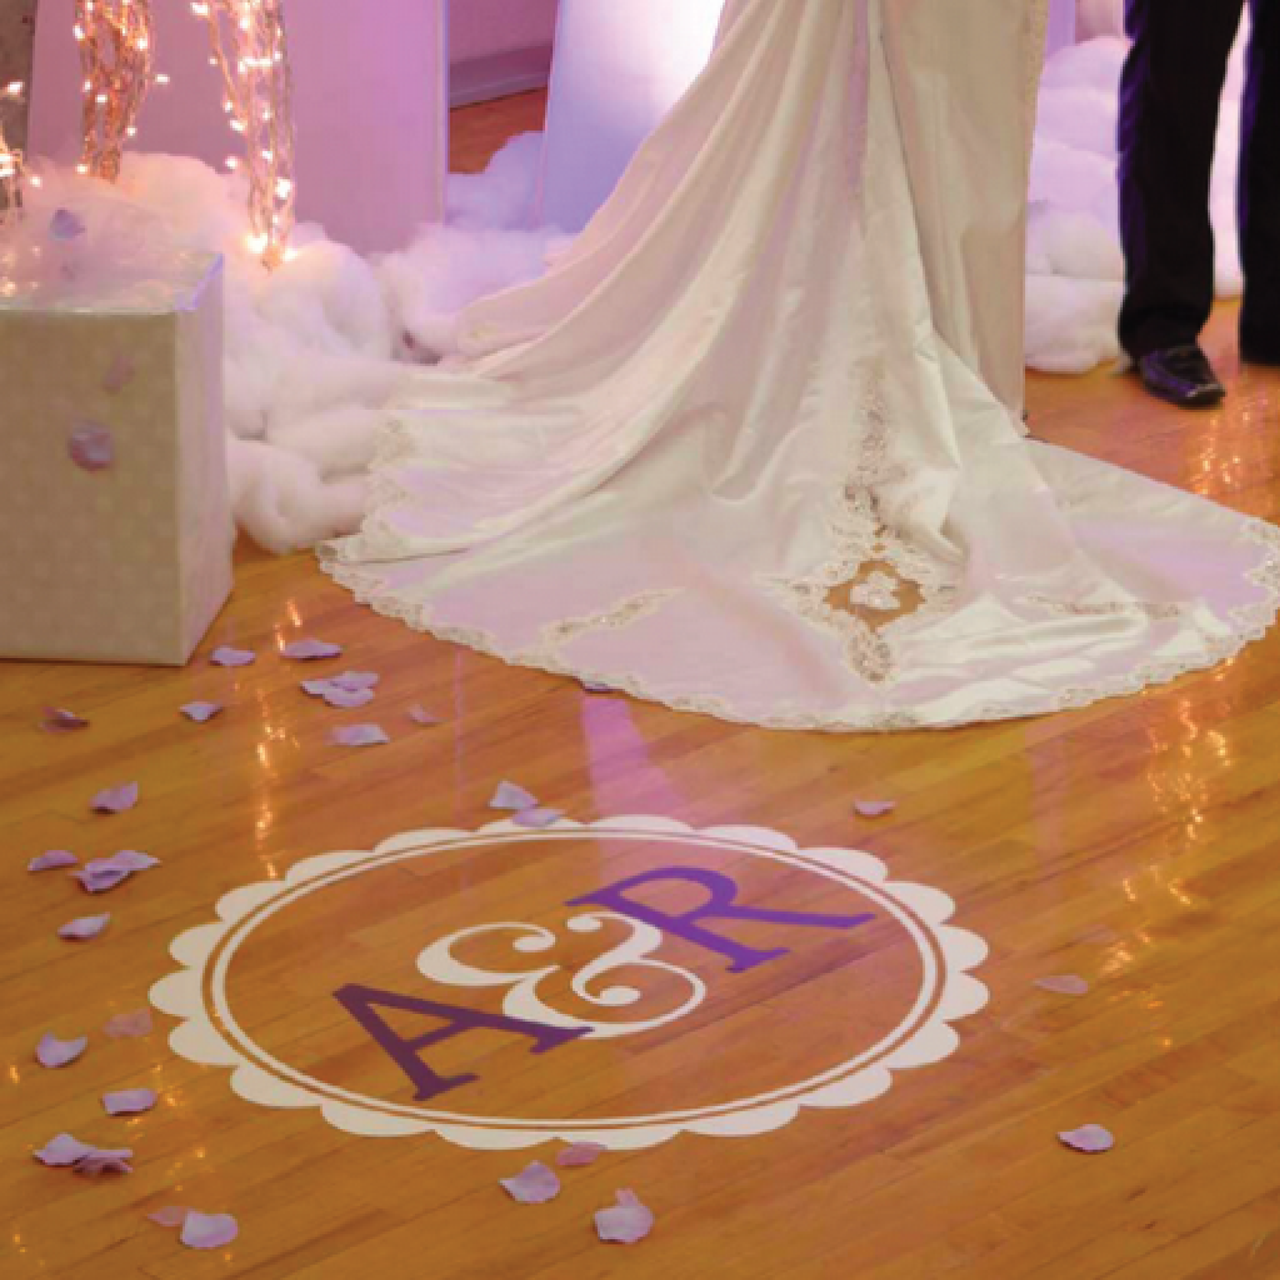 Dance Floor Wedding Decal - Initials